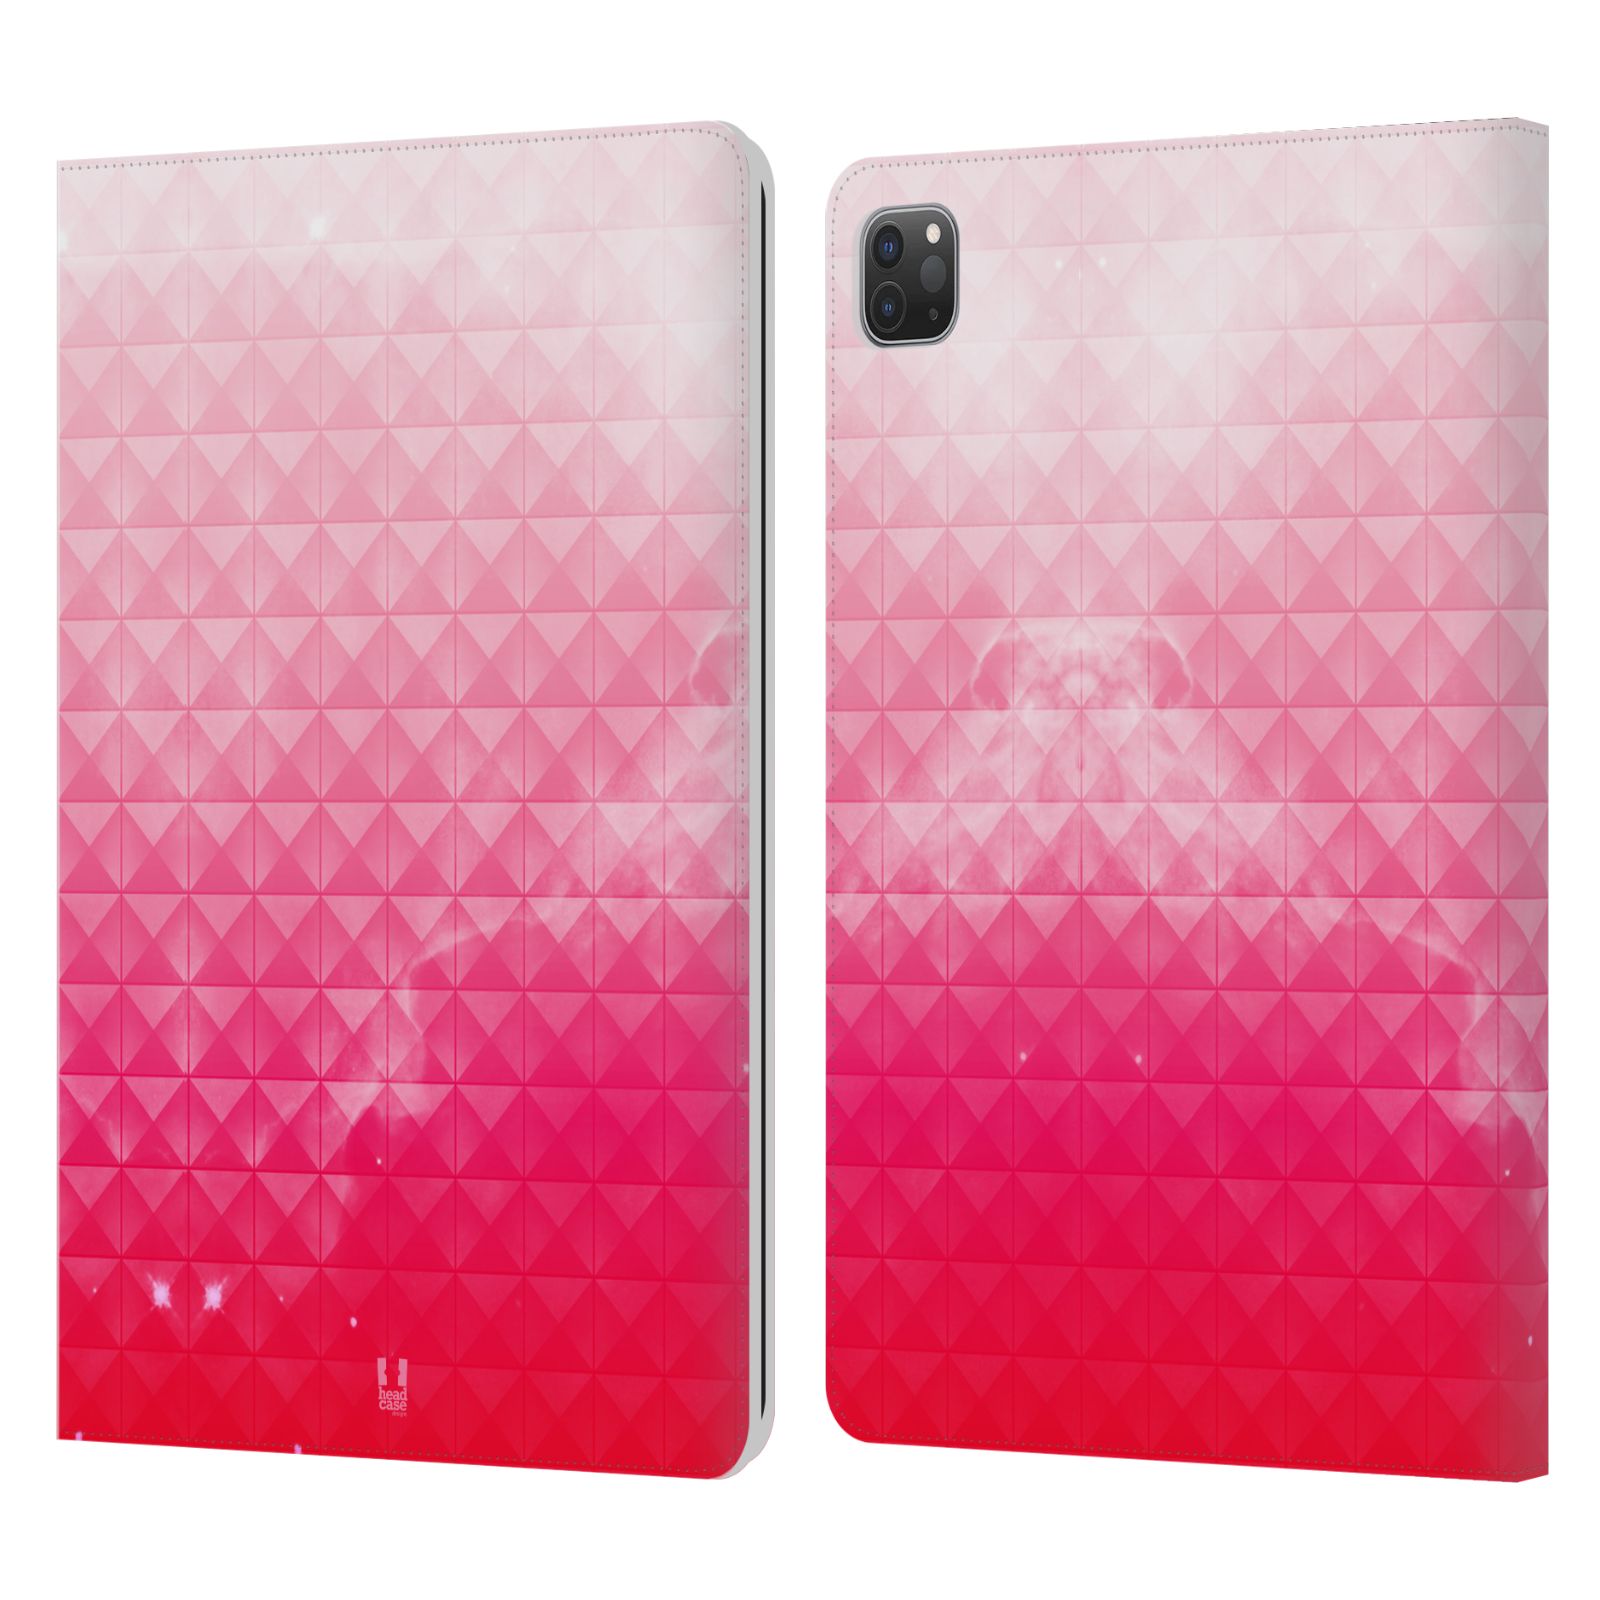 Pouzdro pro tablet Apple Ipad Pro 11 - HEAD CASE - barevná vesmírná mlhovina růžová jahoda